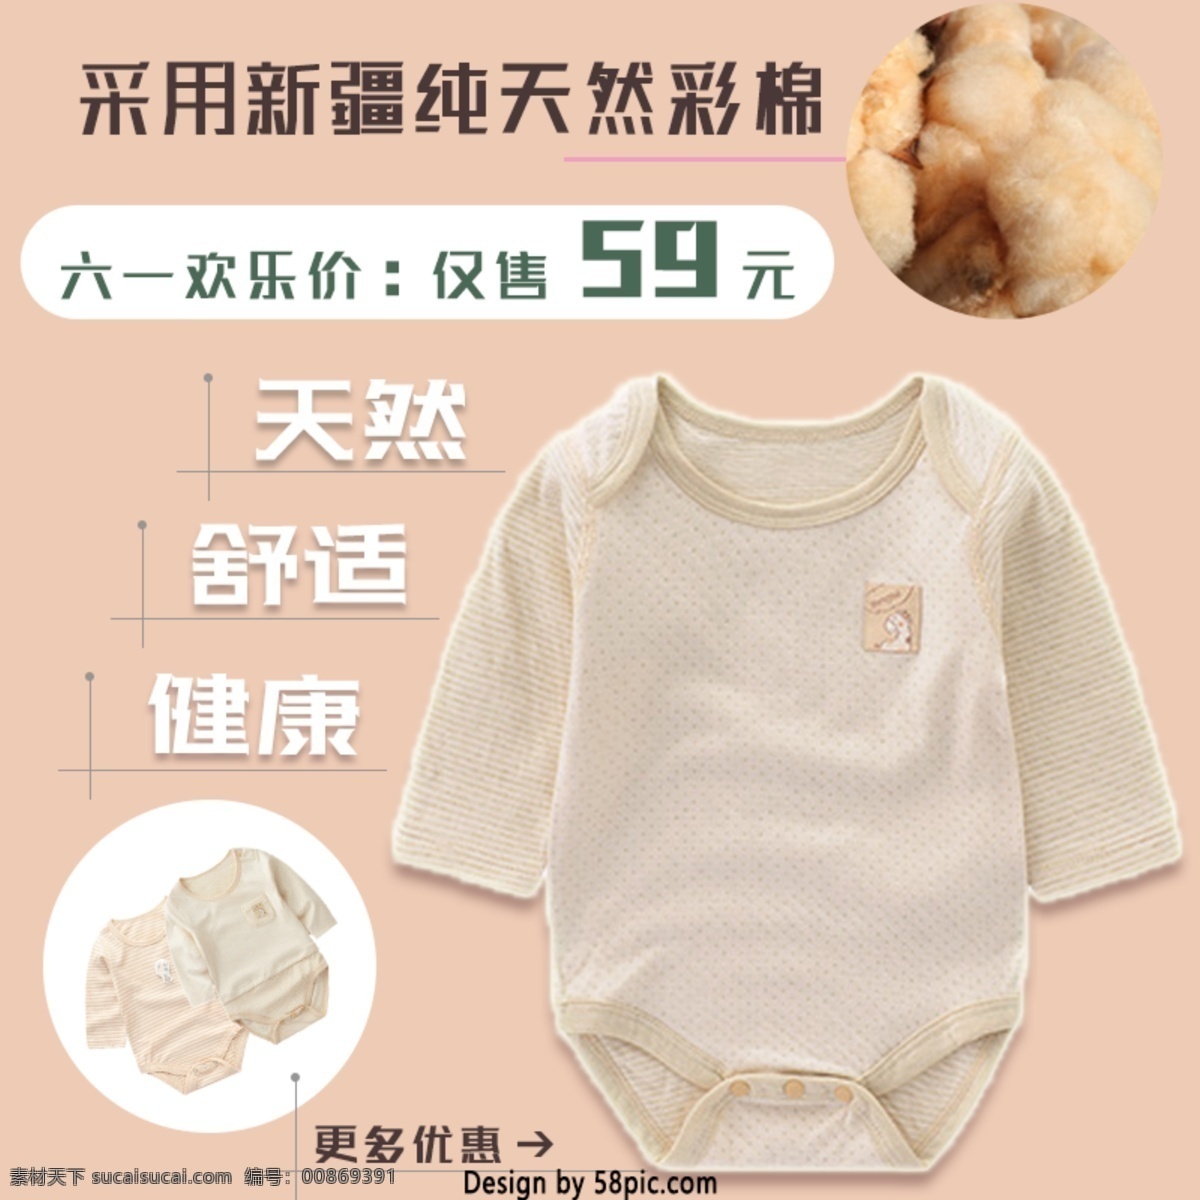 六一儿童节 纯 彩棉 宝宝 衣服 优惠 活动 主 图 暖色 促销 儿童节 六一 纯彩棉